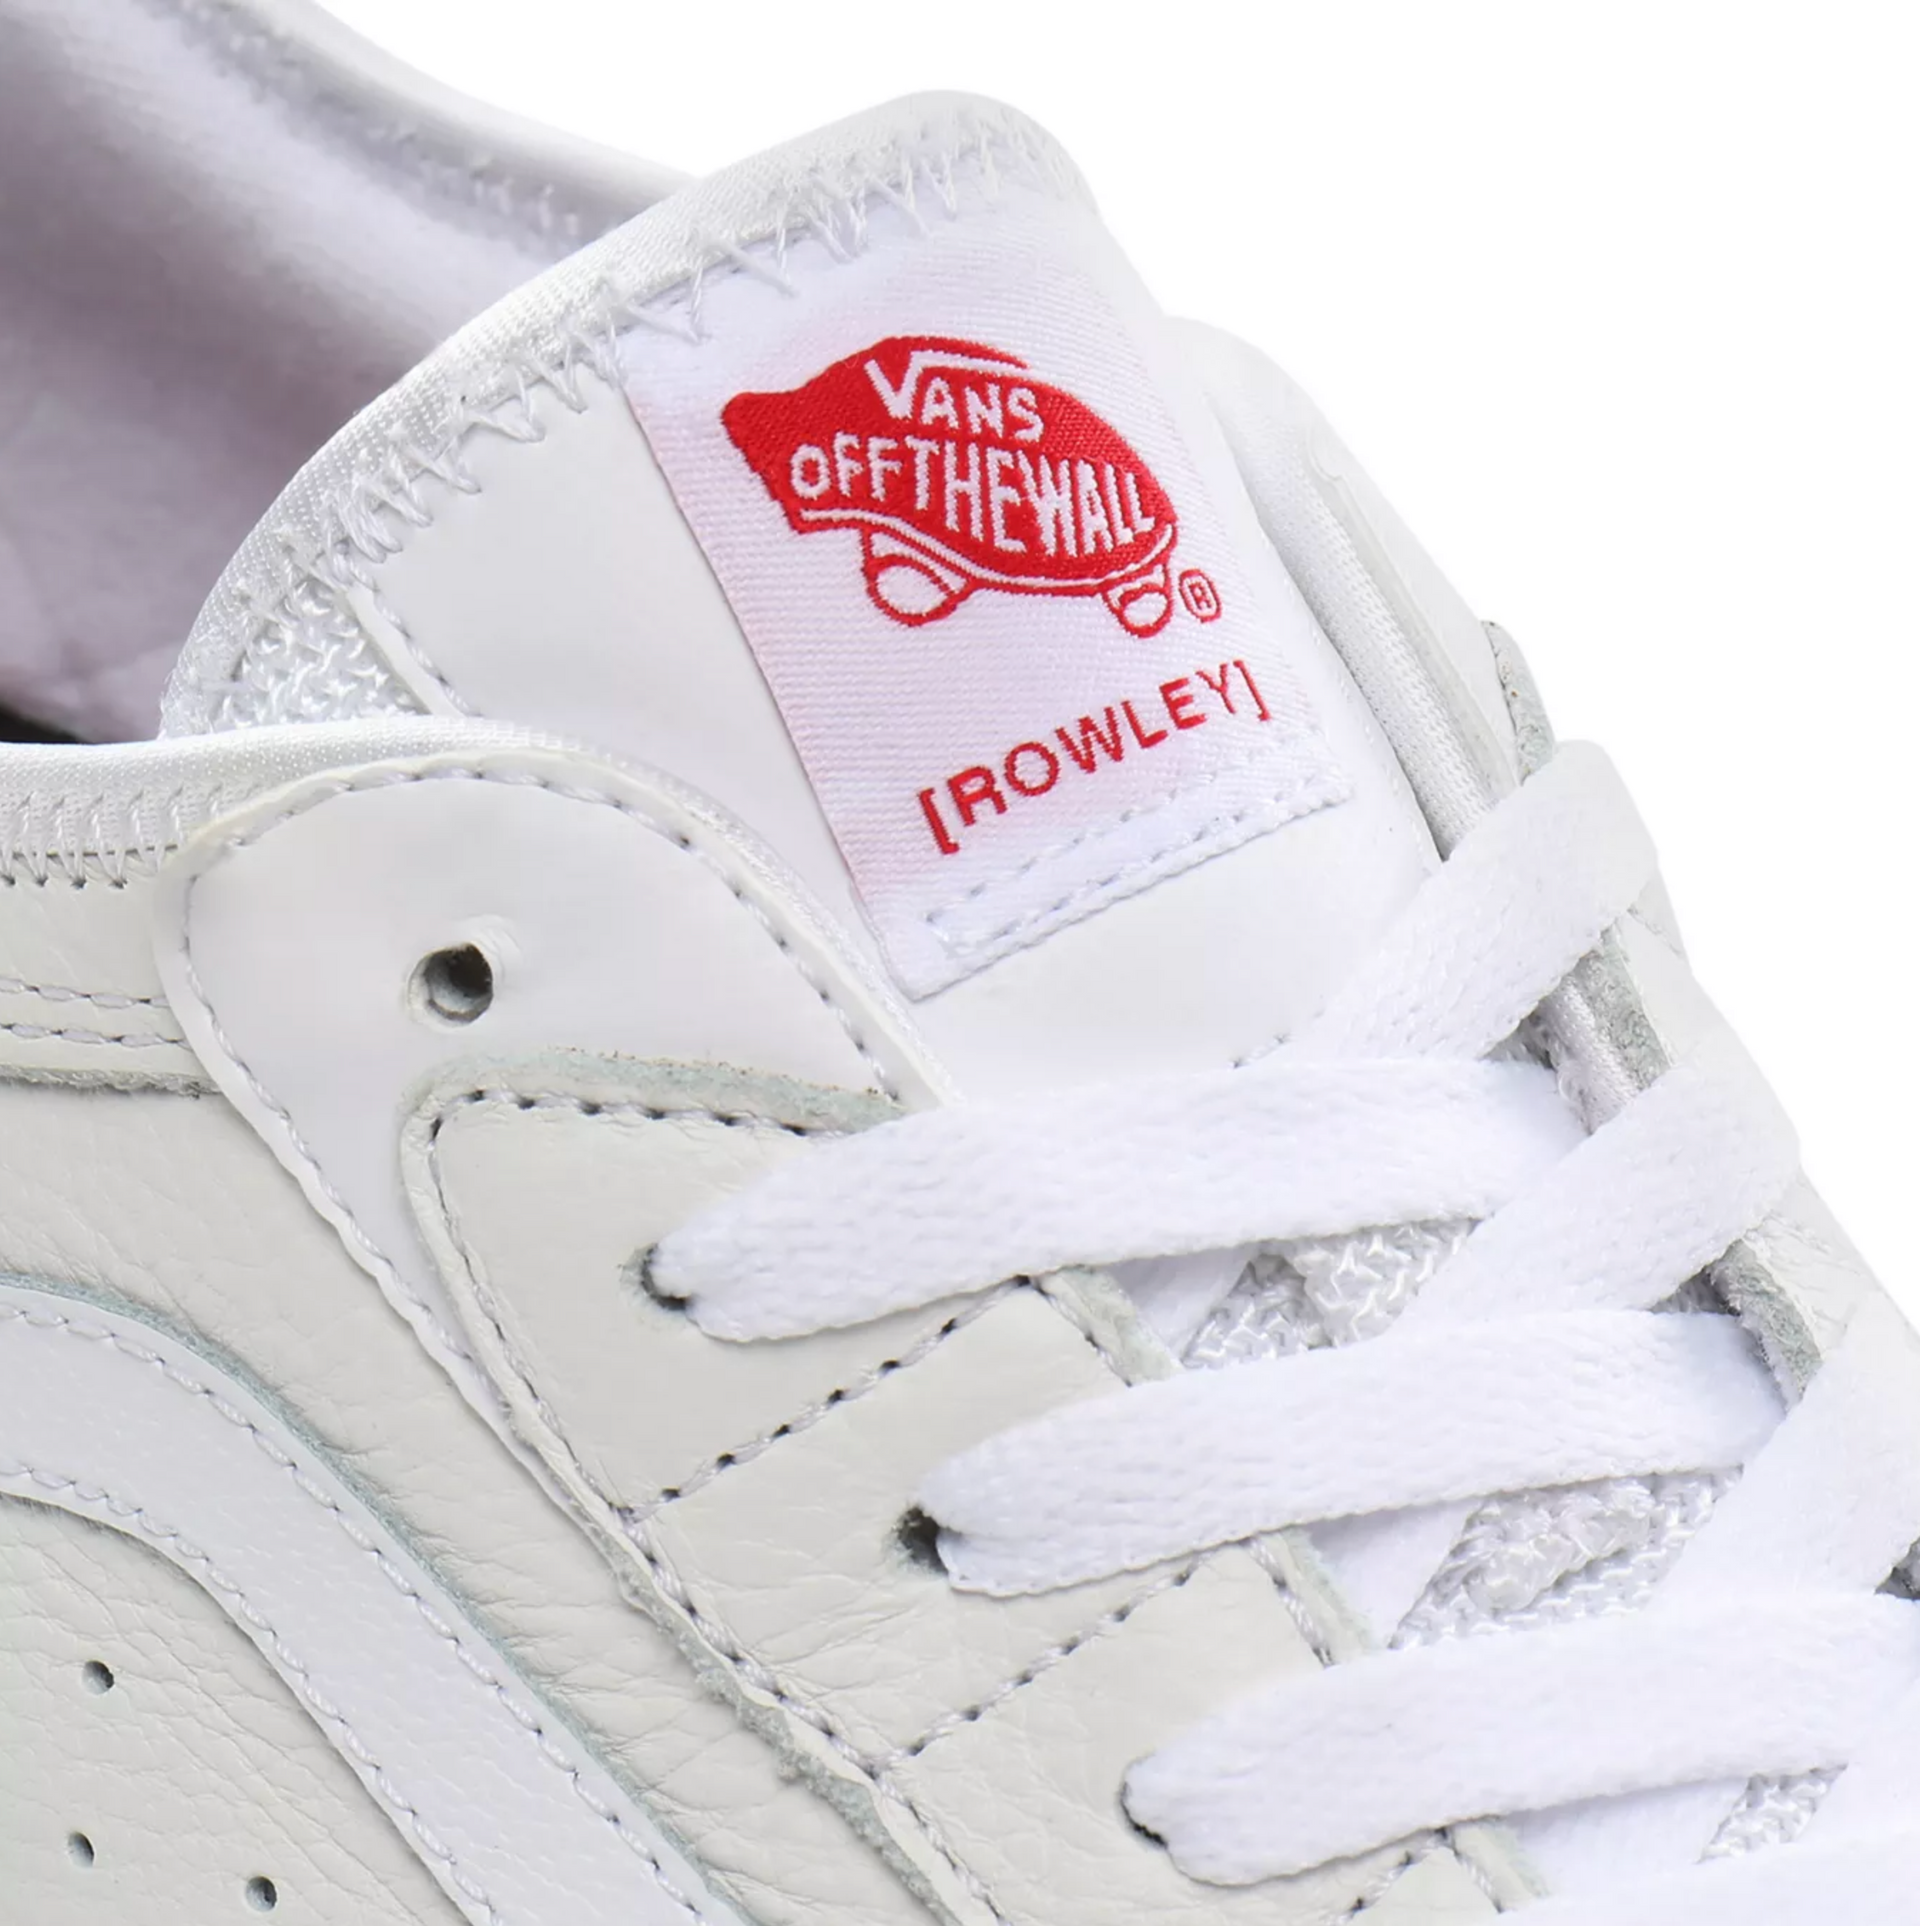 Vans Rowley Classic Shoe - White / Gum - Directive Boardshop